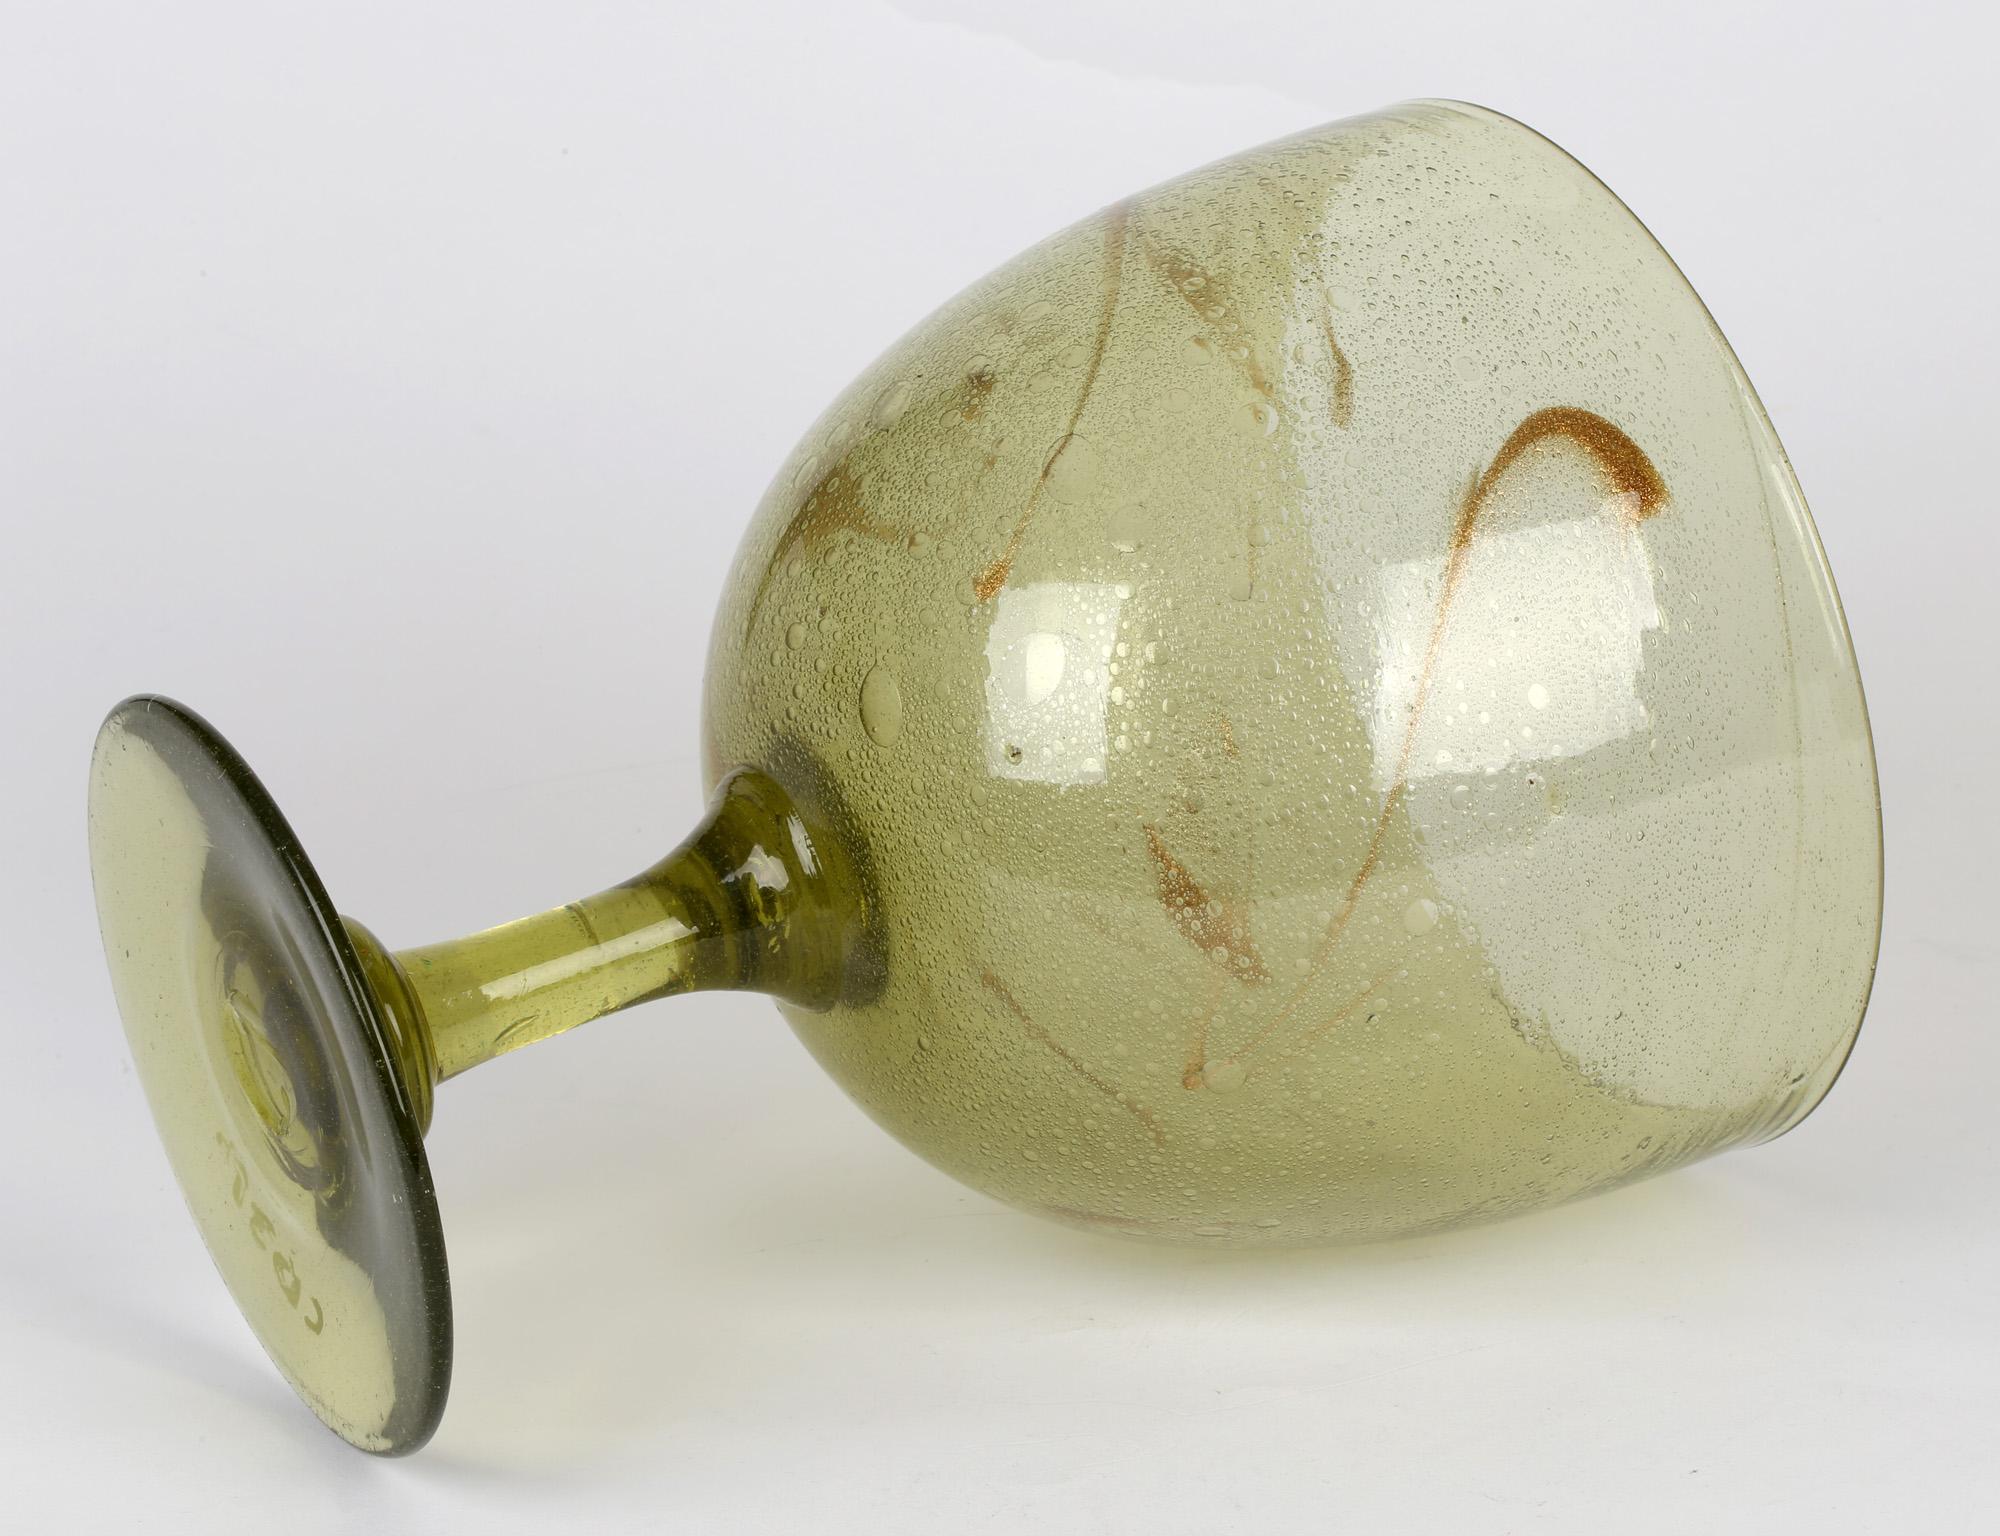 British Christopher Dresser for James Coupar Clutha Glass Footed Goblet Shaped Vase